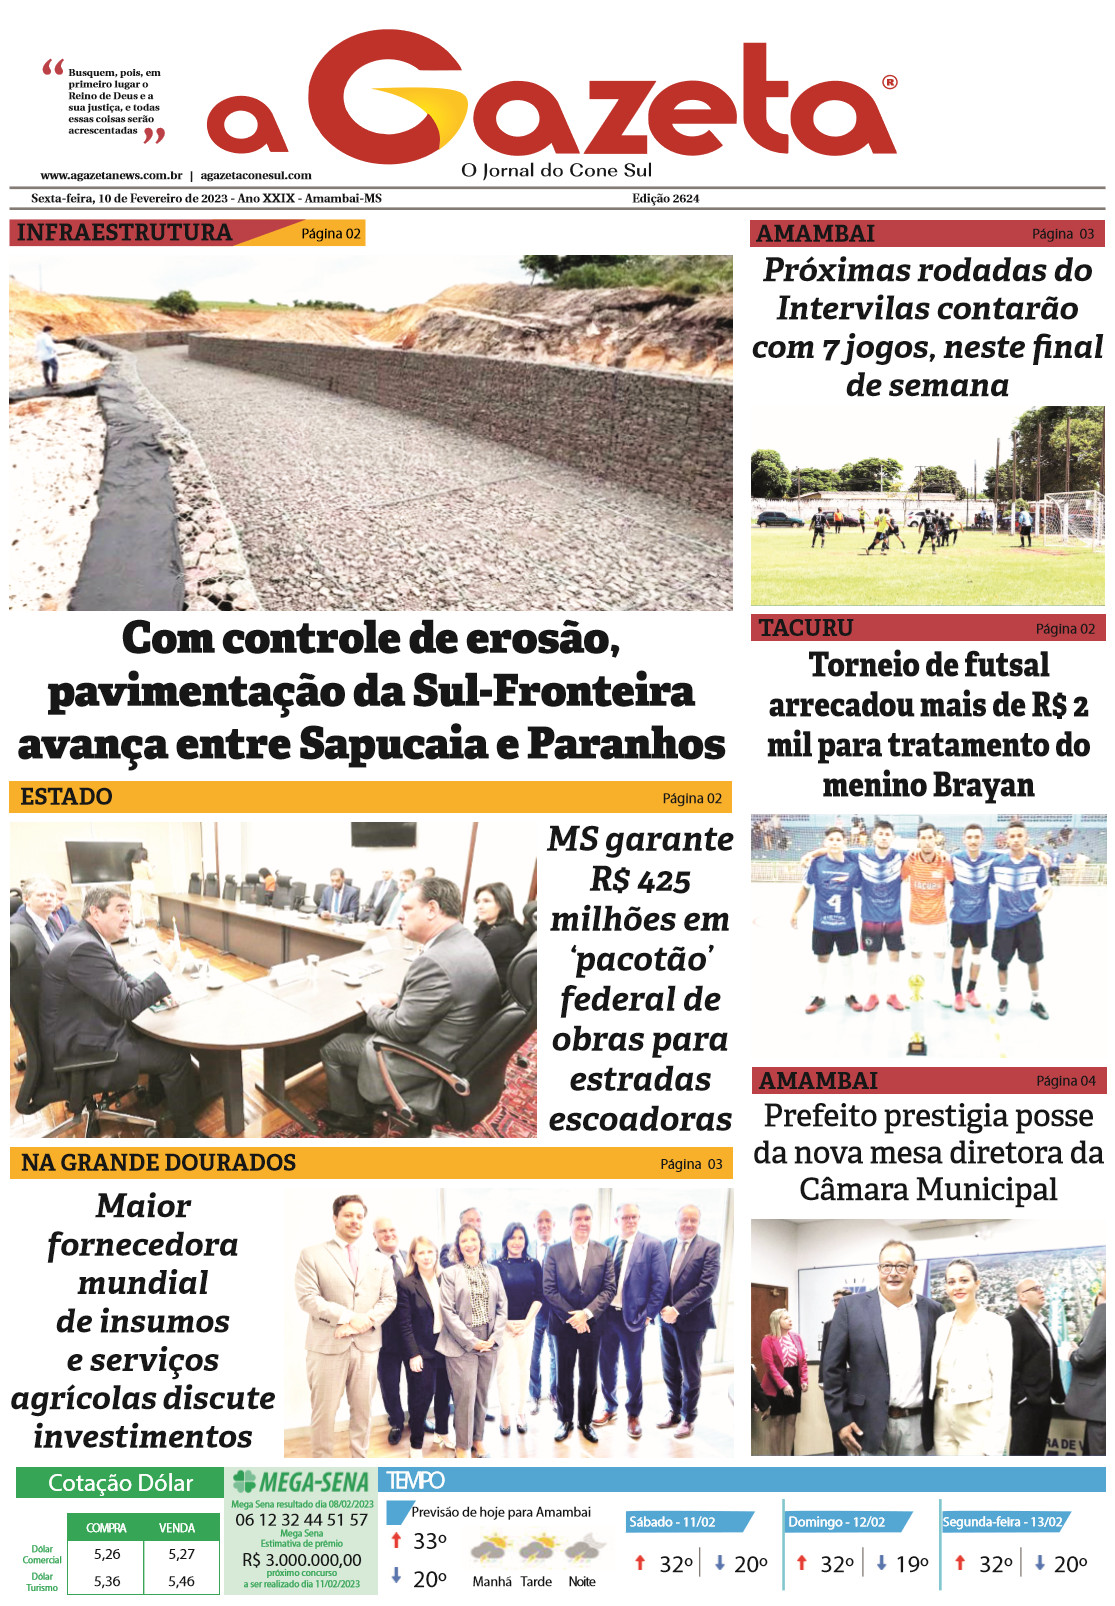 Confira a edição digital do jornal impresso A Gazeta desta sexta-feira, dia 10